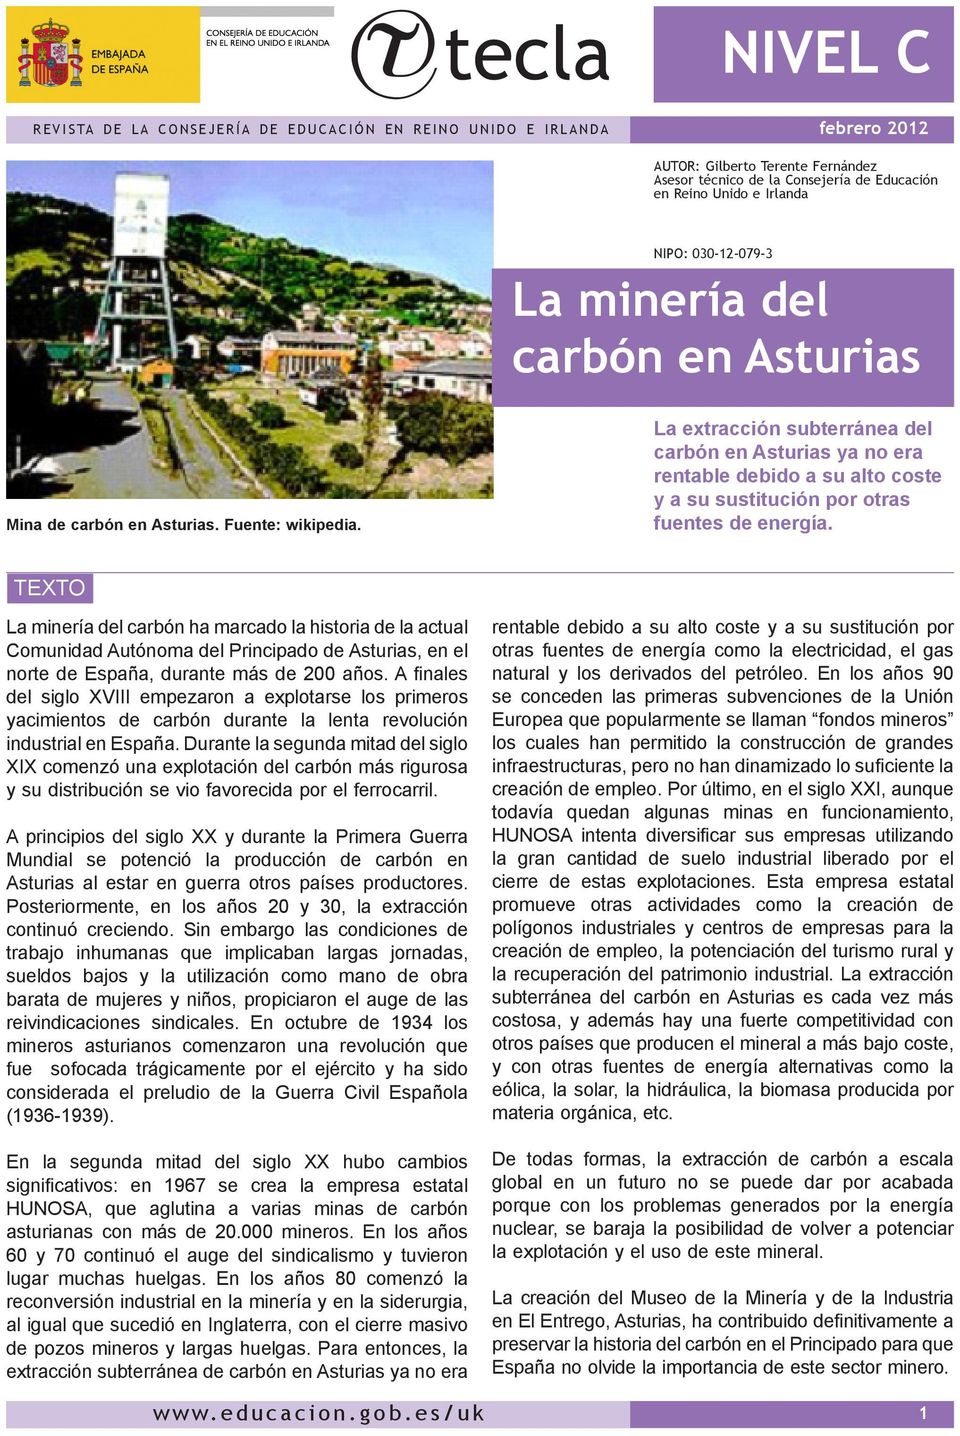 La extracción subterránea del carbón en Asturias ya no era rentable debido a su alto coste y a su sustitución por otras fuentes de energía.